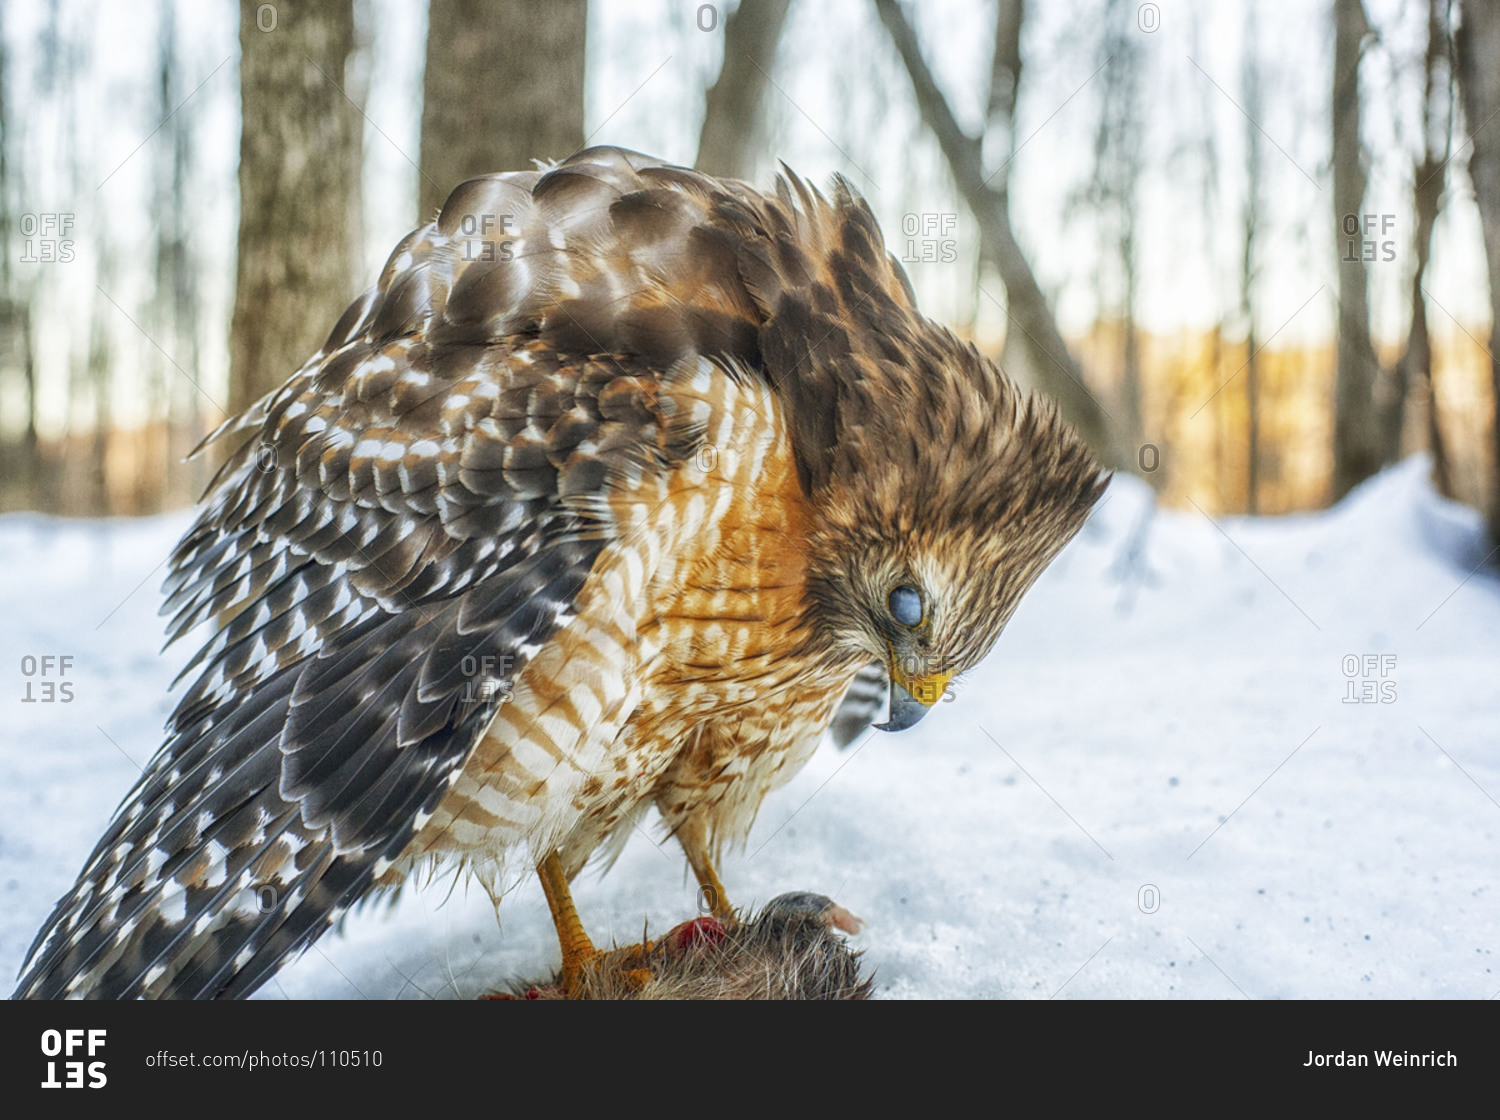 Red-shouldered hawk feeding on its prey